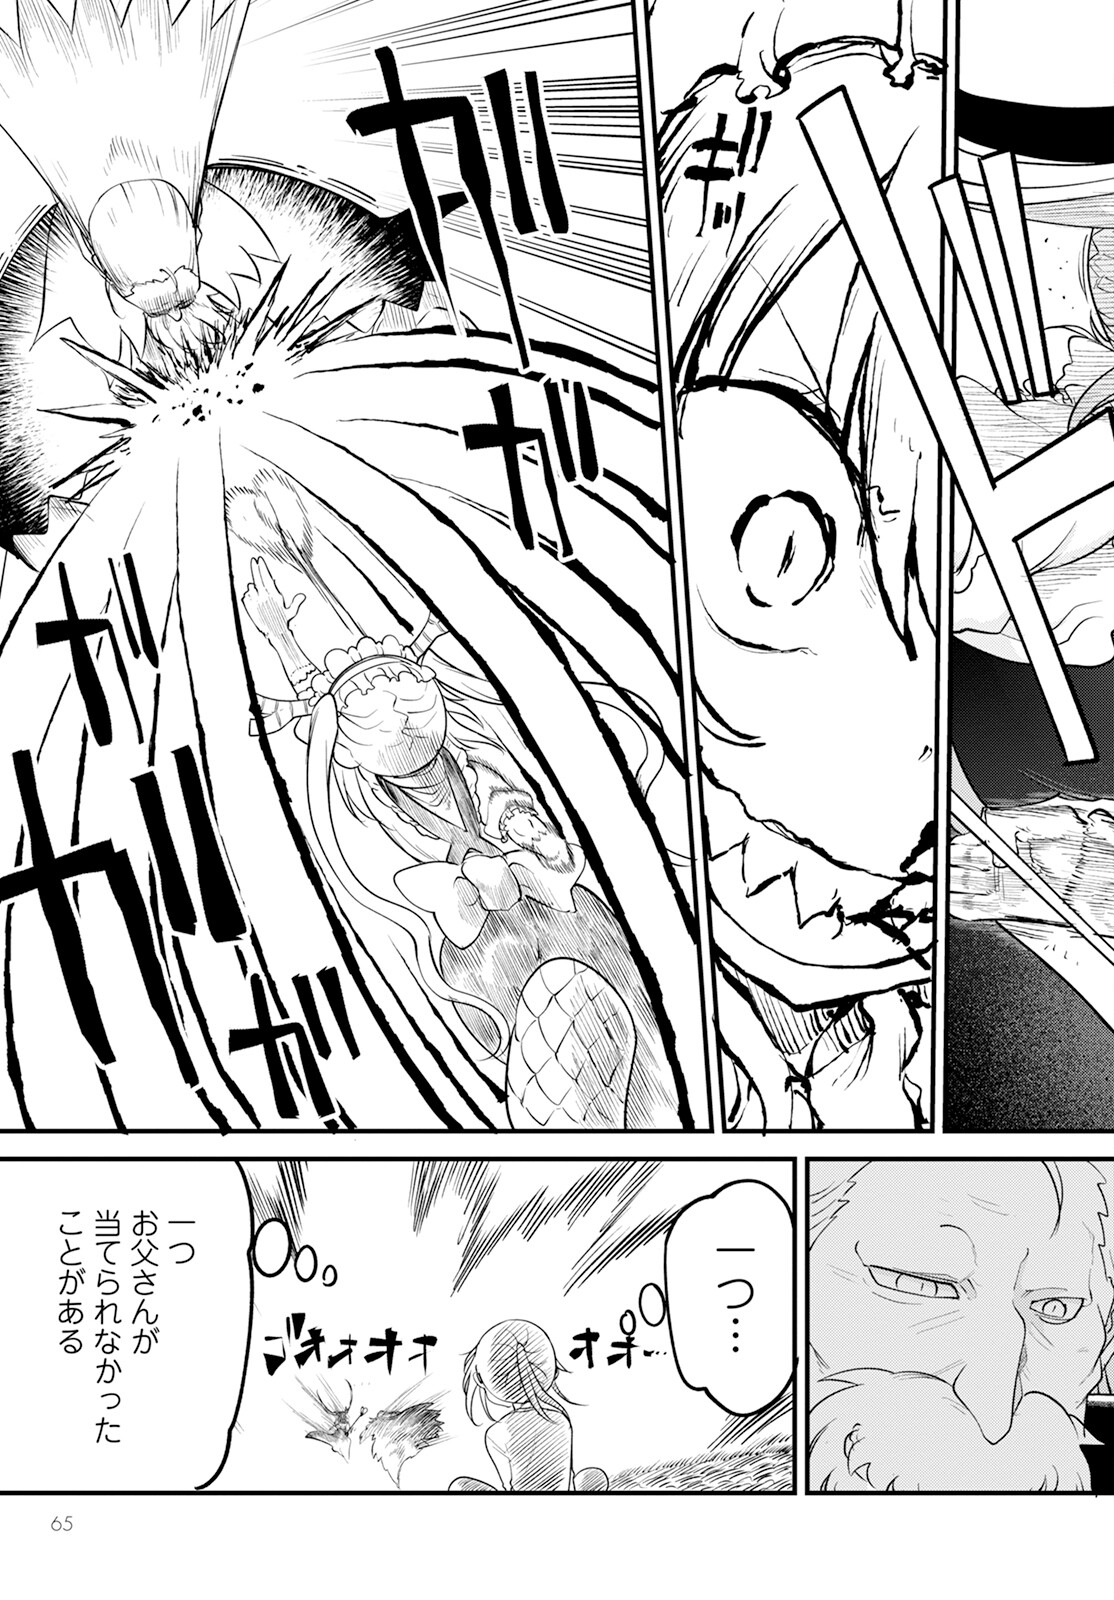 Kobayashi-san Chi no Maid Dragon - Chapter 139 - Page 13